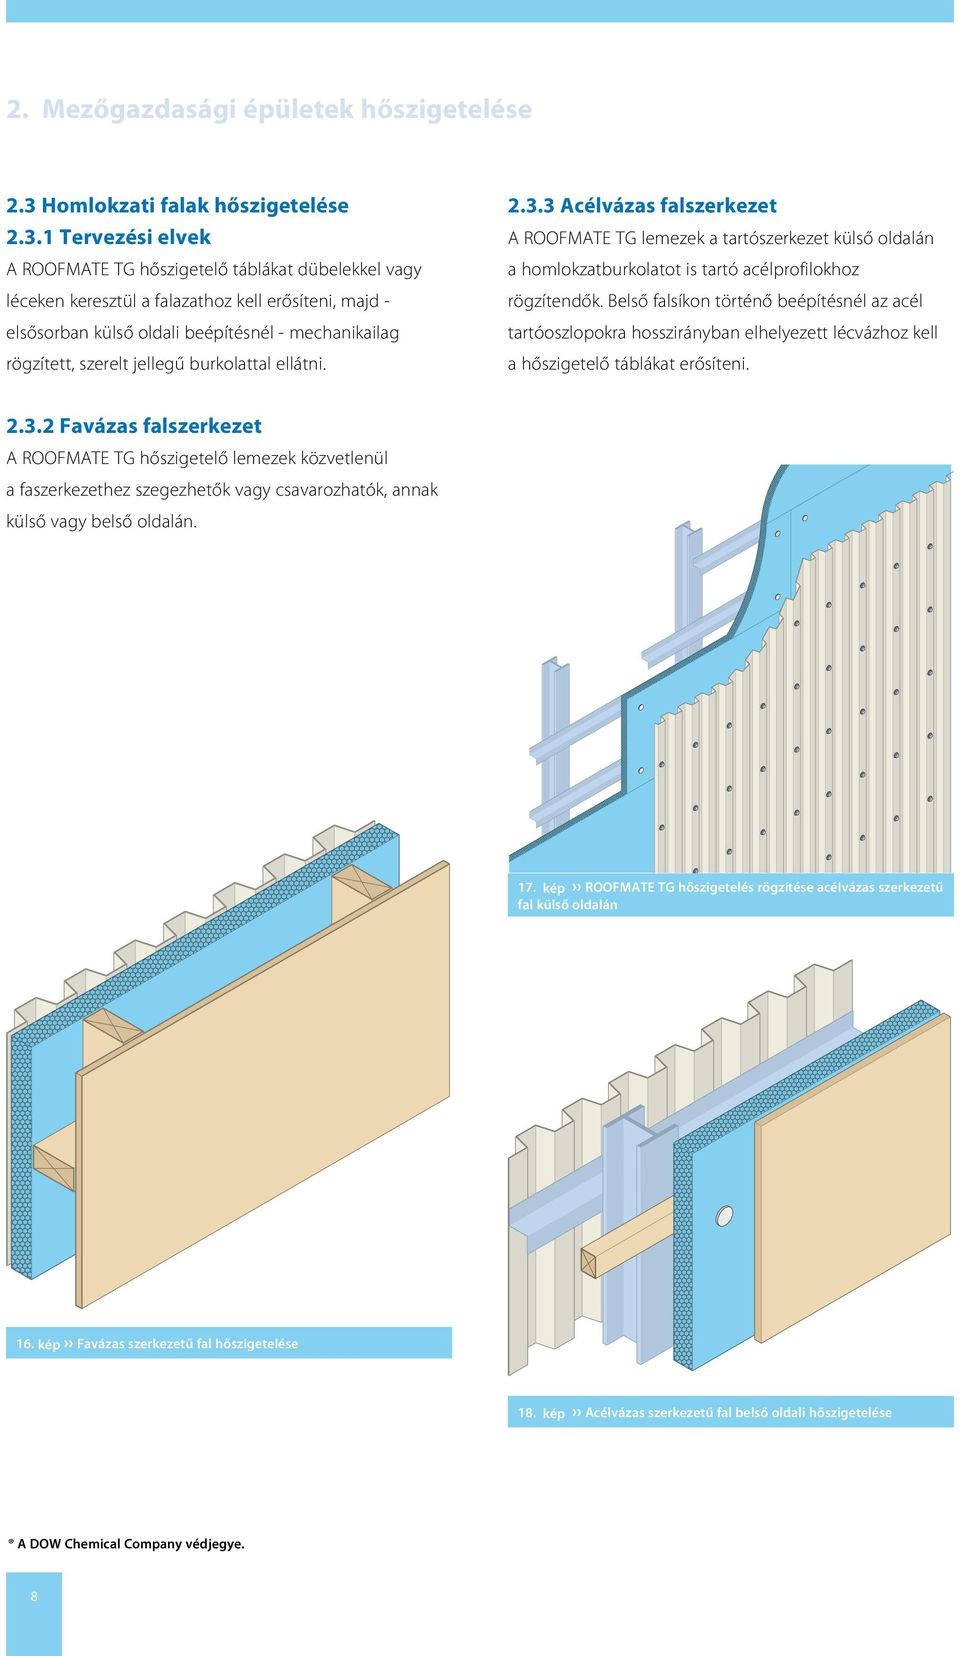 1 Tervezési elvek A ROOFMATE TG hőszigetelő táblákat dübelekkel vagy léceken keresztül a falazathoz kell erősíteni, majd - elsősorban külső oldali beépítésnél - mechanikailag rögzített, szerelt